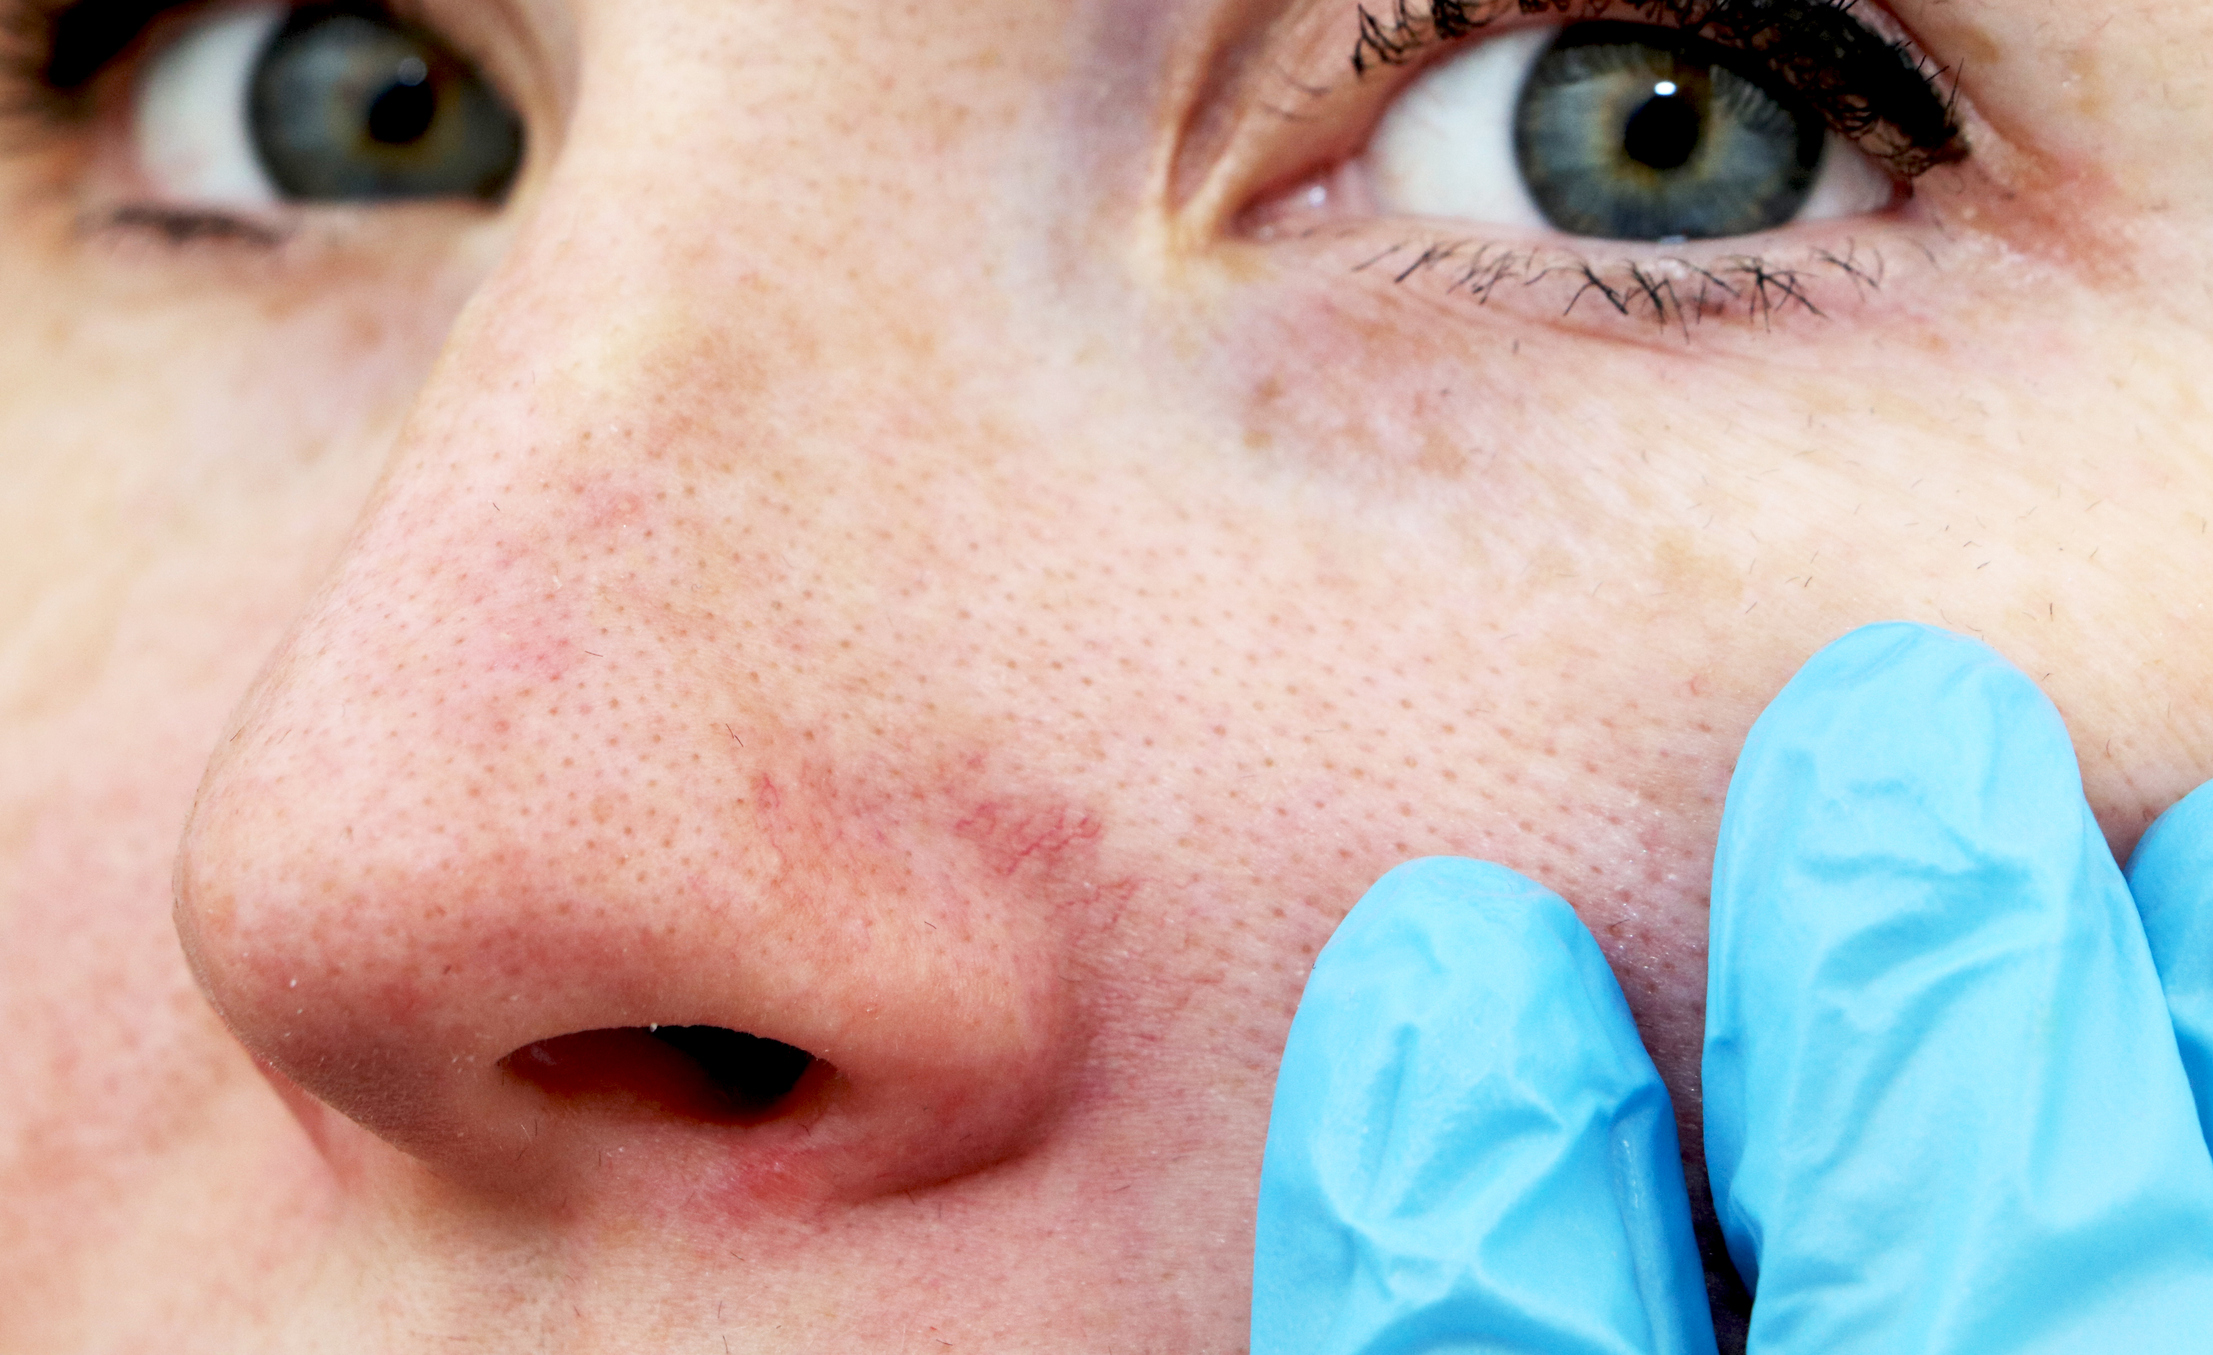 Pókhálóerek az orron és az arcon - ez a bőrgyógyász tanácsa rosacea esetén  | EgészségKalauz